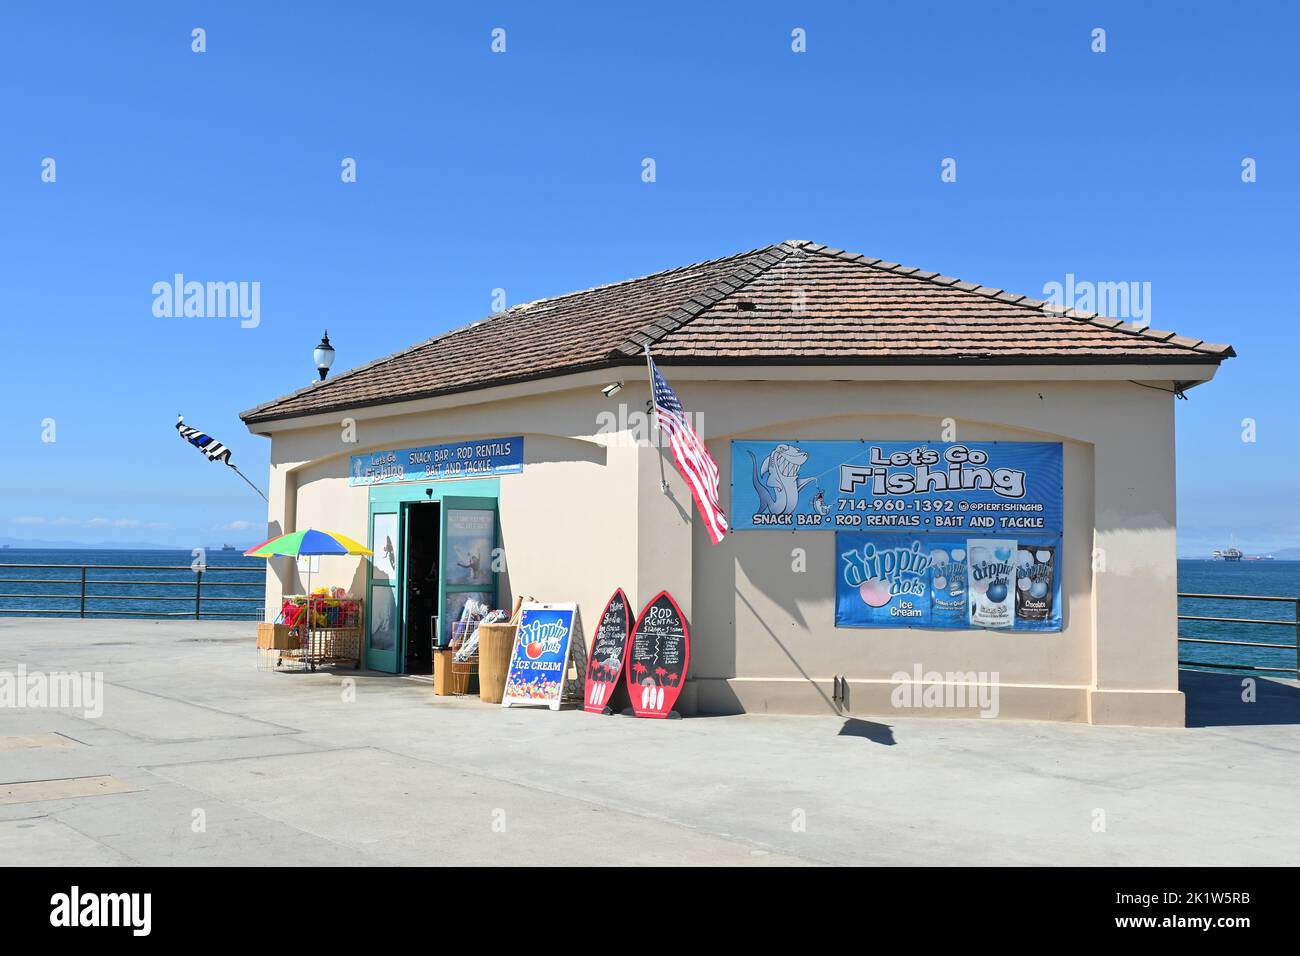 HUNTINGTON BEACH, CALIFORNIA, 19 DE SEPT DE 2022: Vamos a pescar, cebo y aparejo, tienda de regalos y snack bar combo en el muelle. Foto de stock